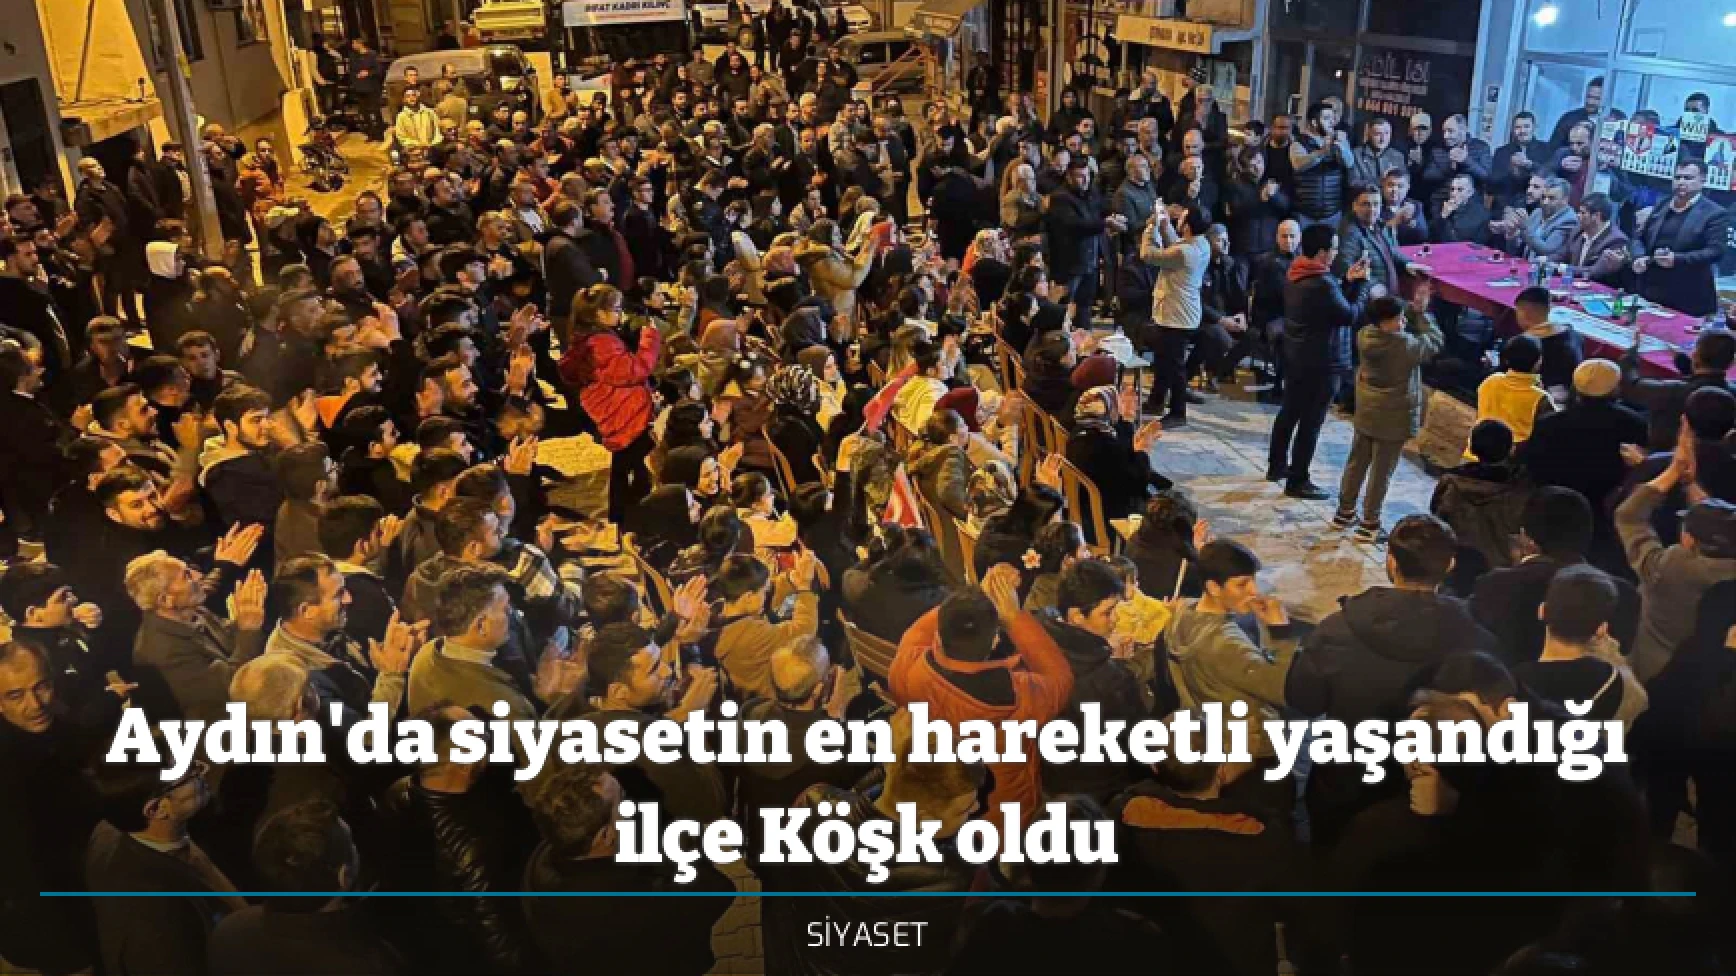 Aydın'da siyasetin en hareketli yaşandığı ilçe Köşk oldu